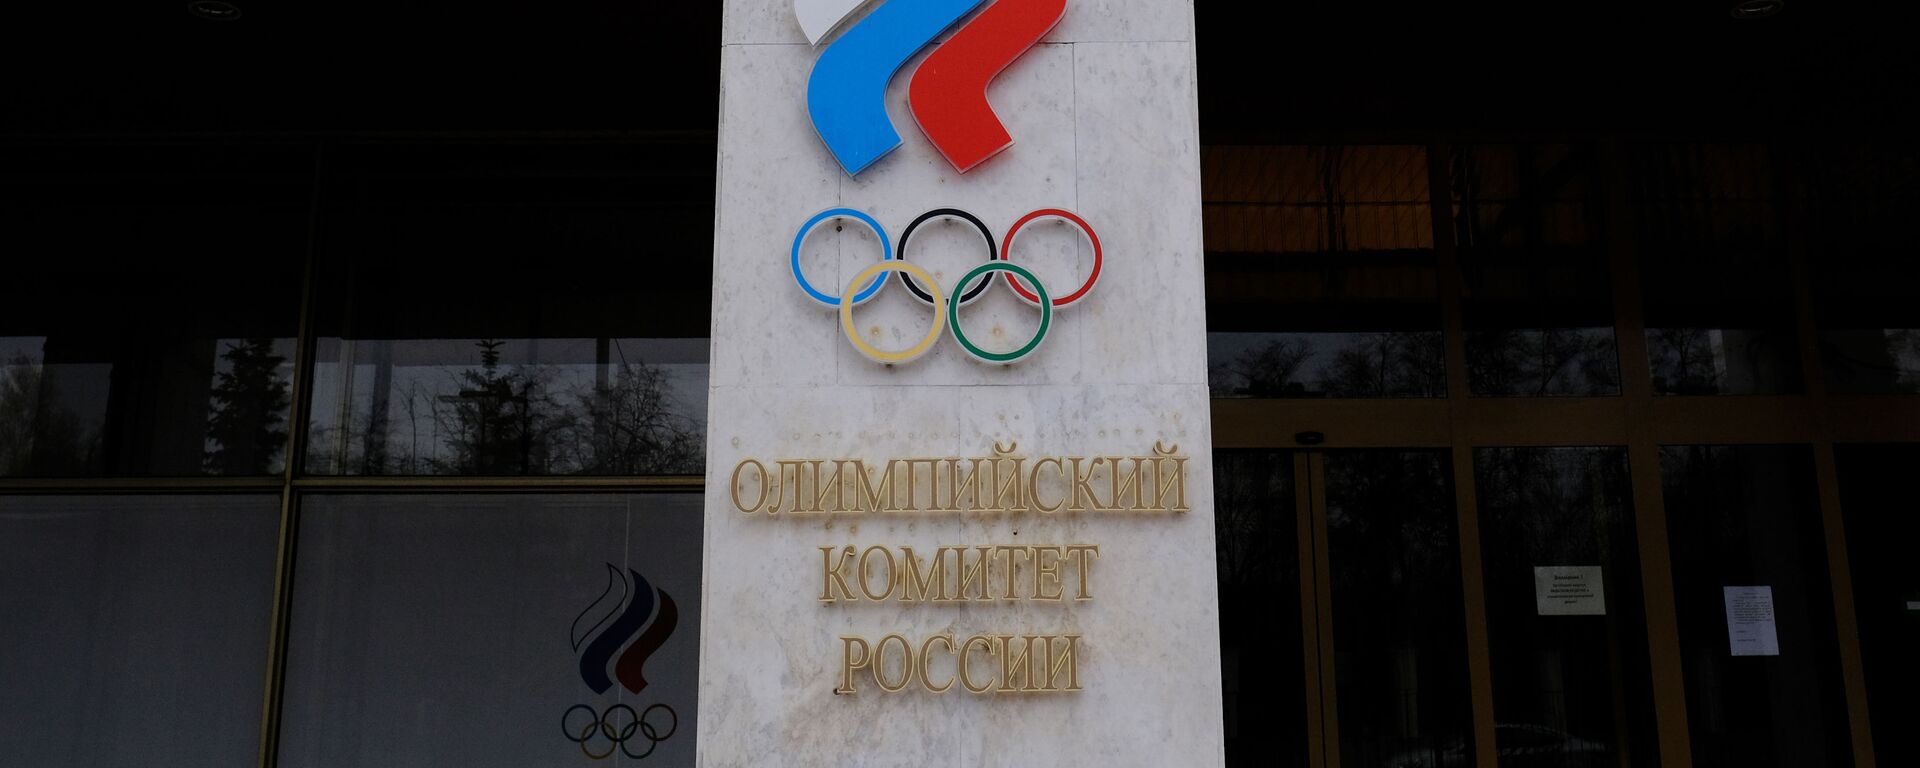 Эмблема на здании Олимпийского комитета России - Sputnik Беларусь, 1920, 19.02.2021